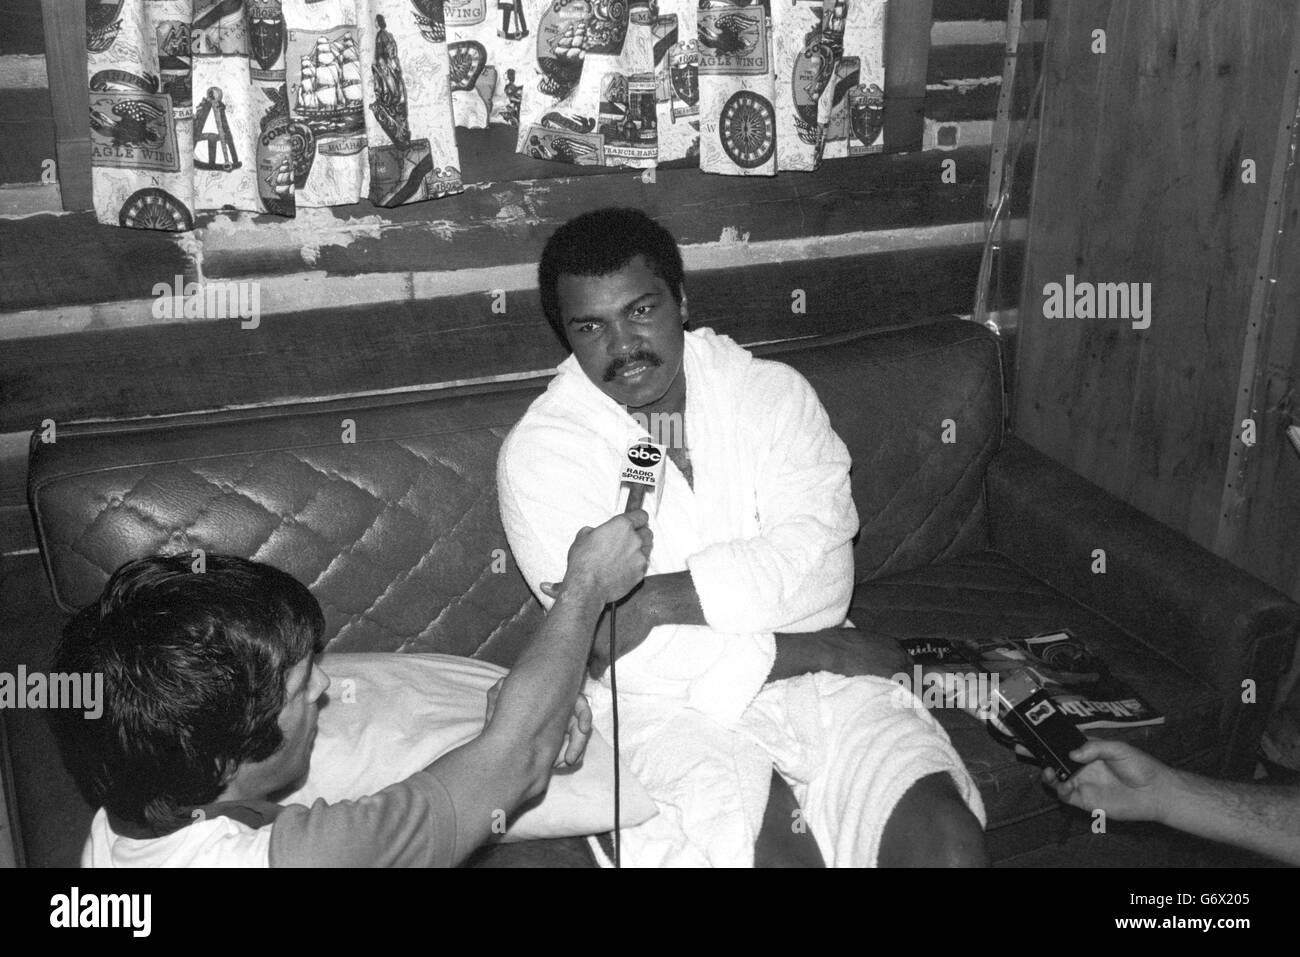 Pugilato - Muhammad Ali. Muhammad Ali parla con i giornalisti che sfoggiano baffi. Foto Stock